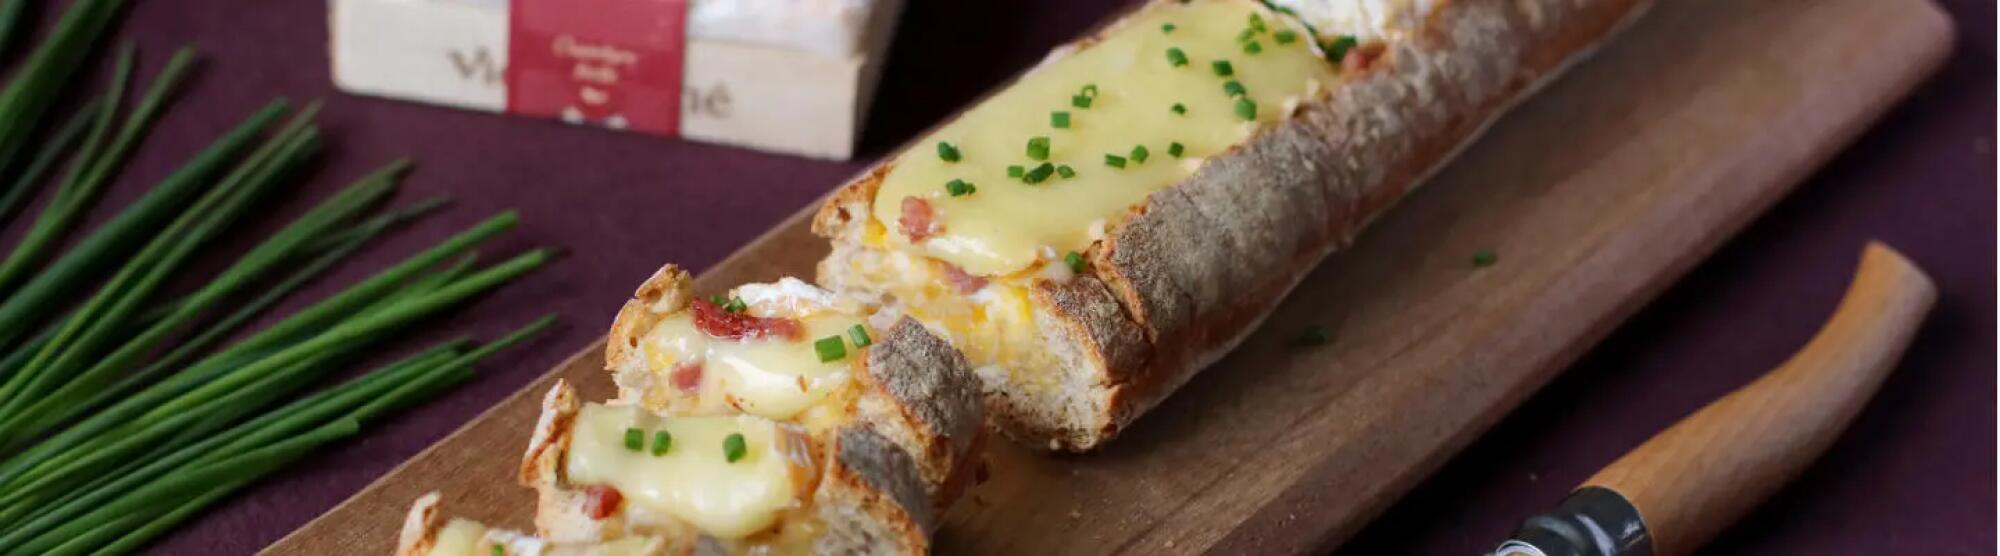 Recette : Baguette apéritive au fromage